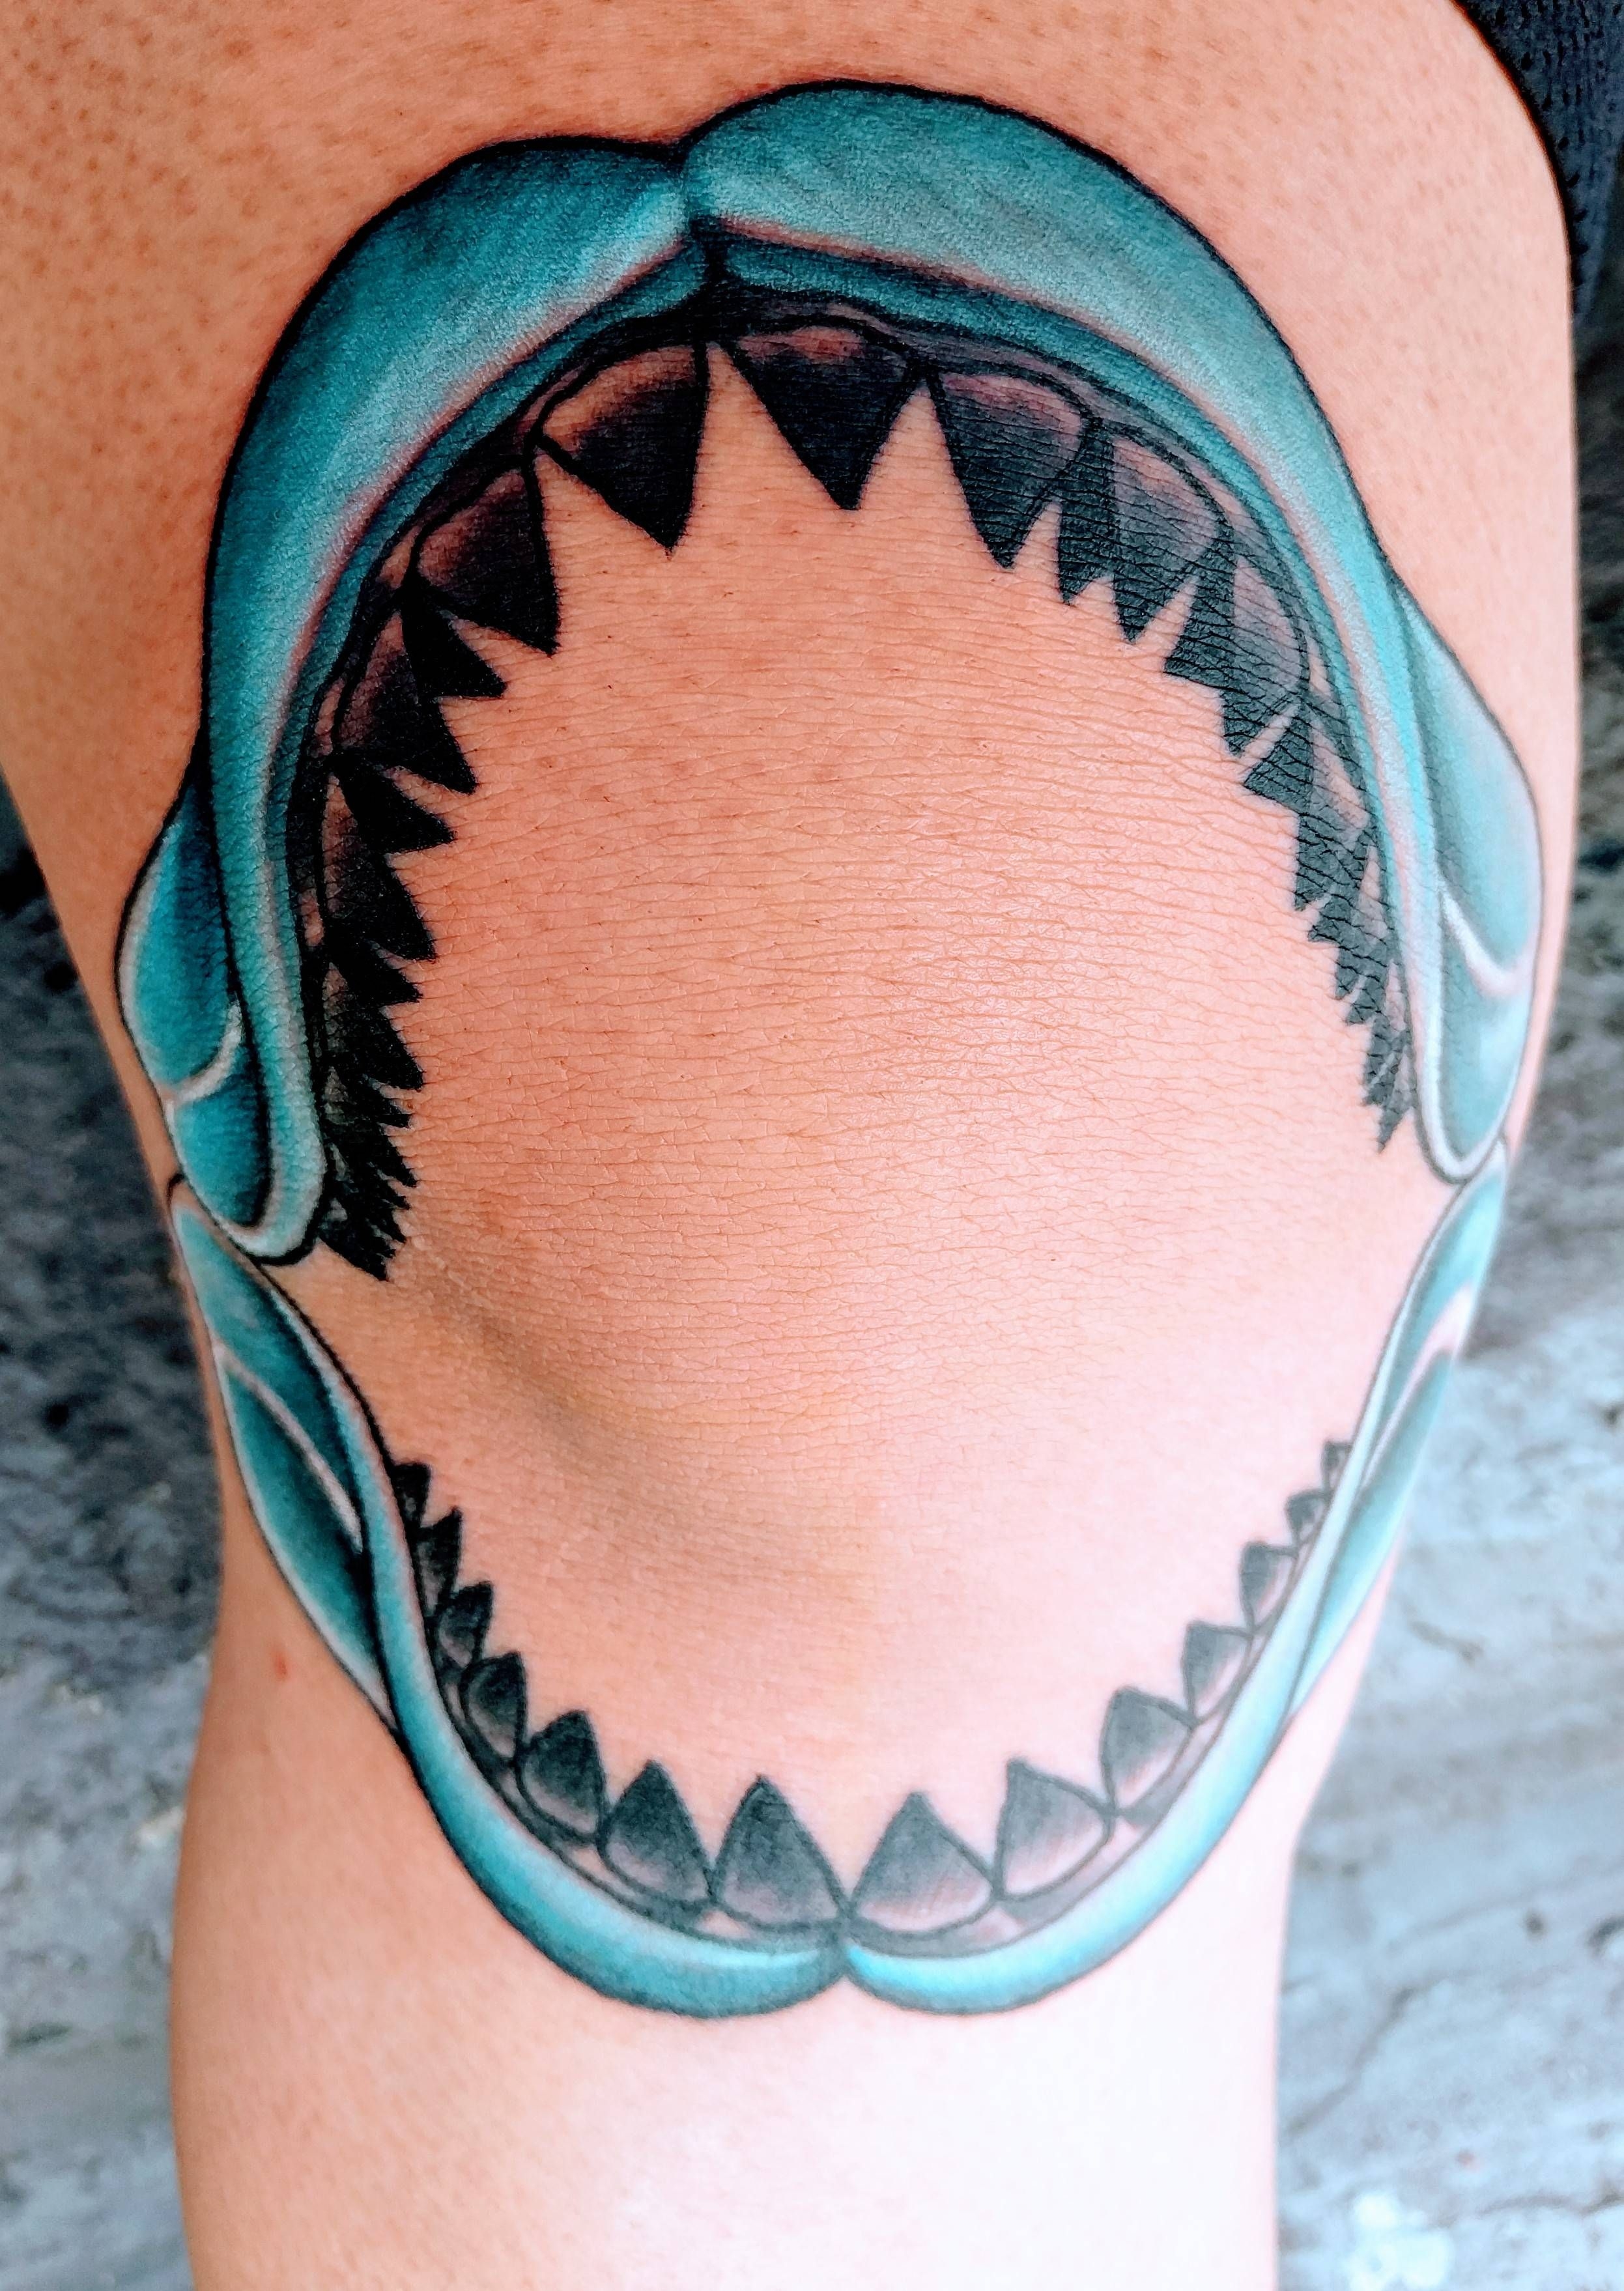 Челюсть акулы тату